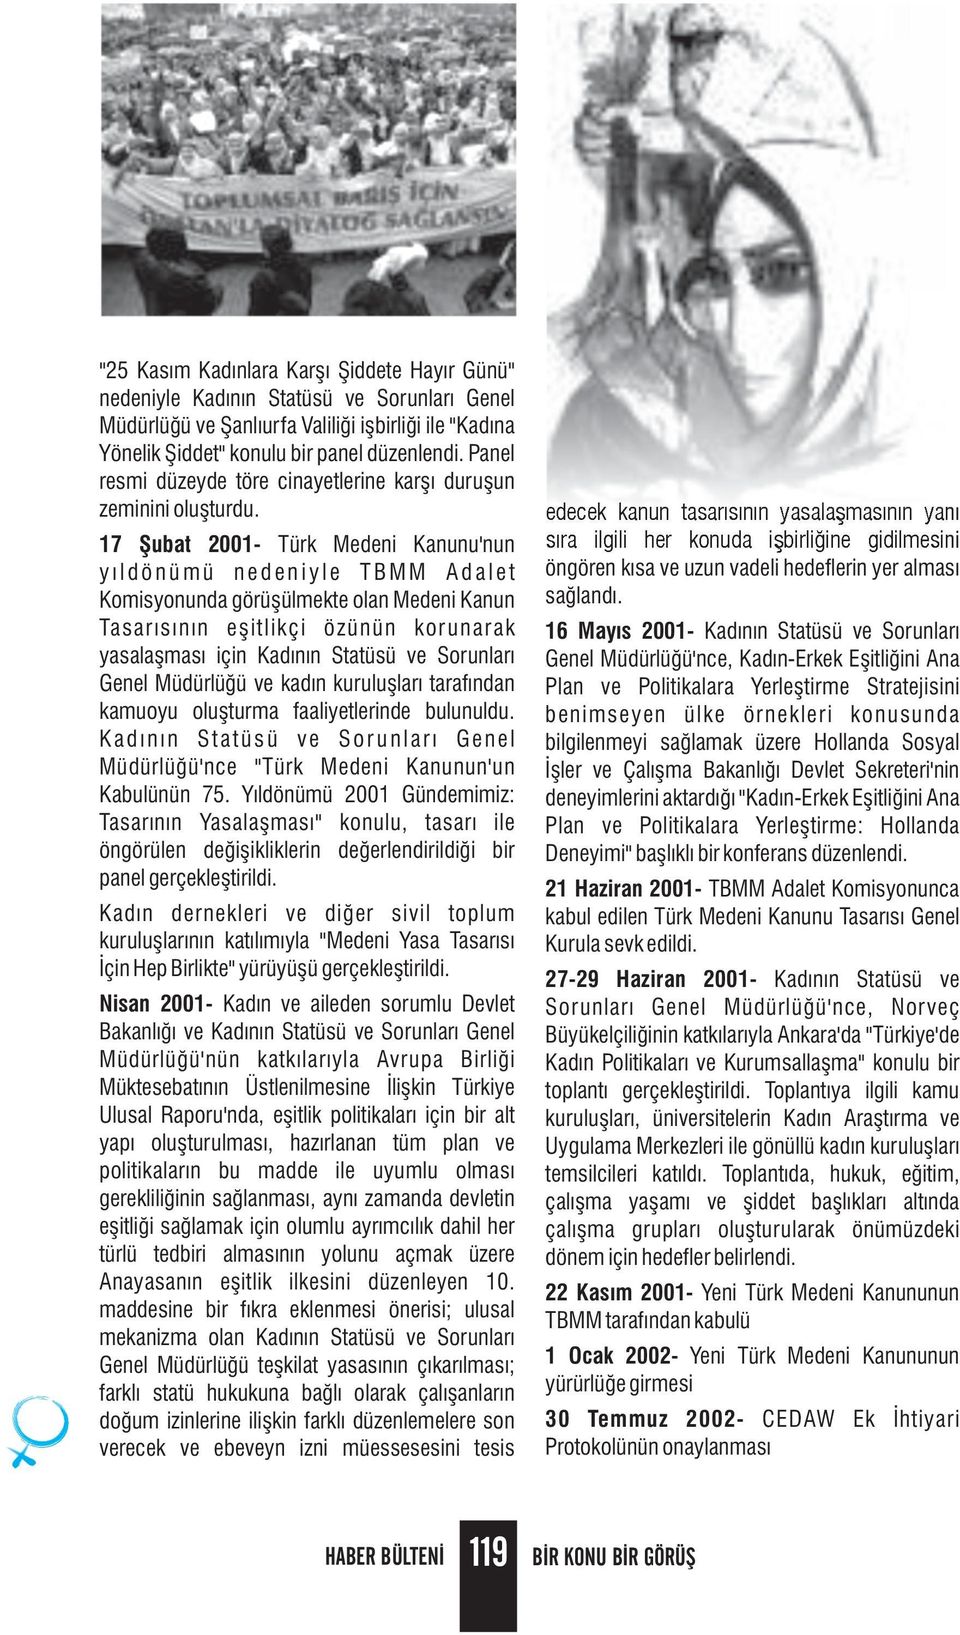 17 Şubat 2001- Türk Medeni Kanunu'nun y ı l d ö n ü m ü n e d e n i y l e T B M M A d a l e t Komisyonunda görüşülmekte olan Medeni Kanun Tasarısının eşitlikçi özünün kor unarak yasalaşması için